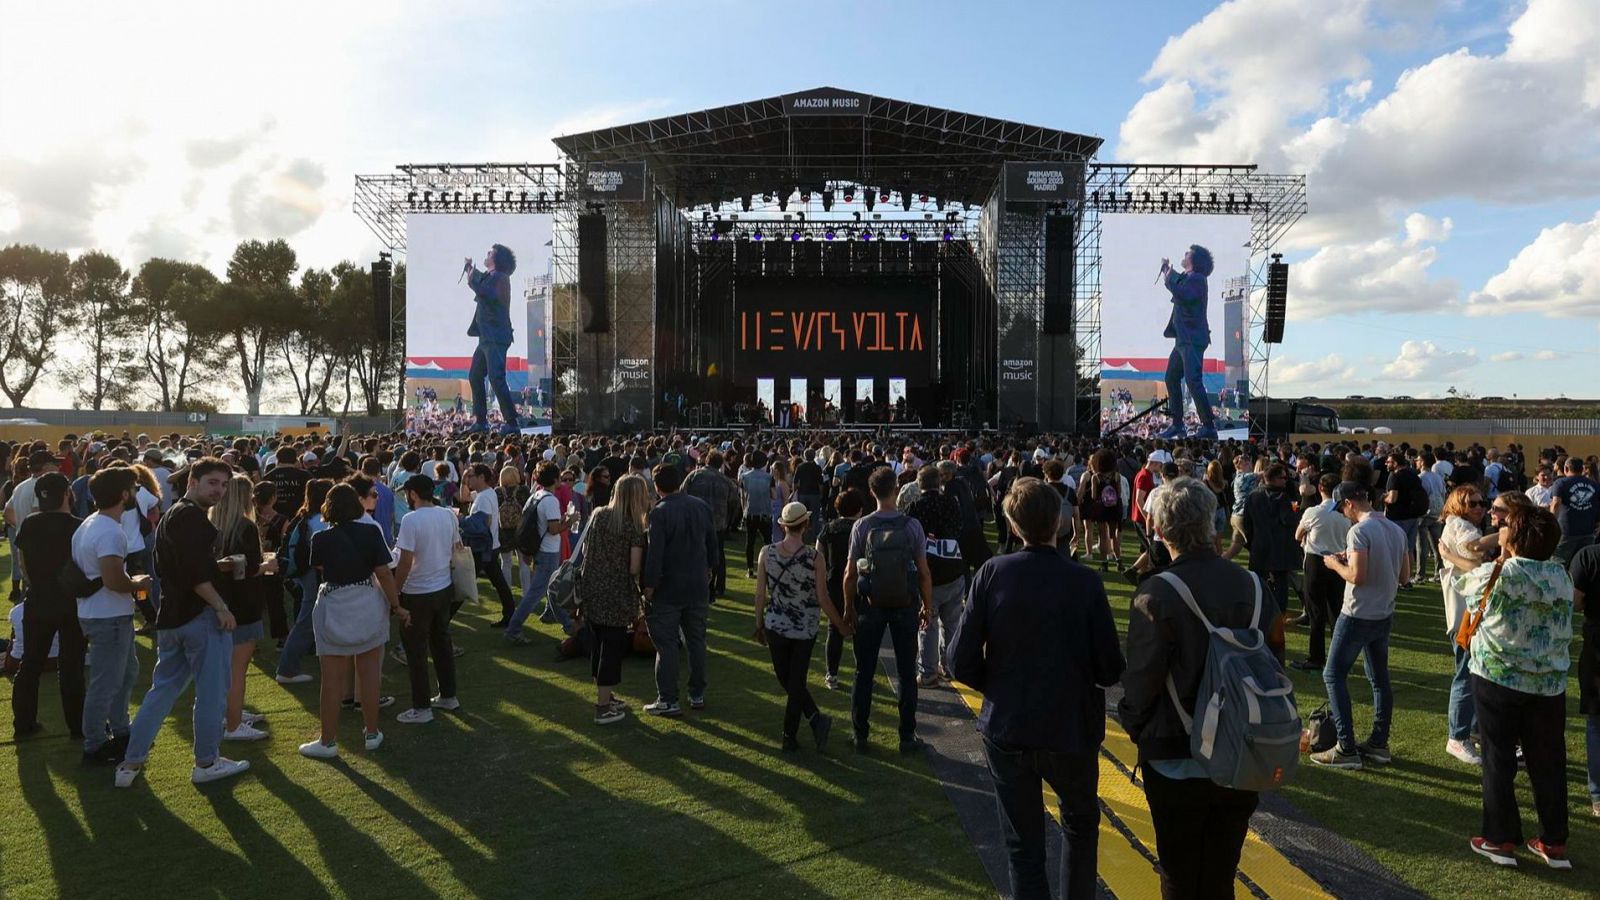 El "boom" de los festivales de música tras la pandemia: "Se quiere compartir y vivir una experiencia colectiva"